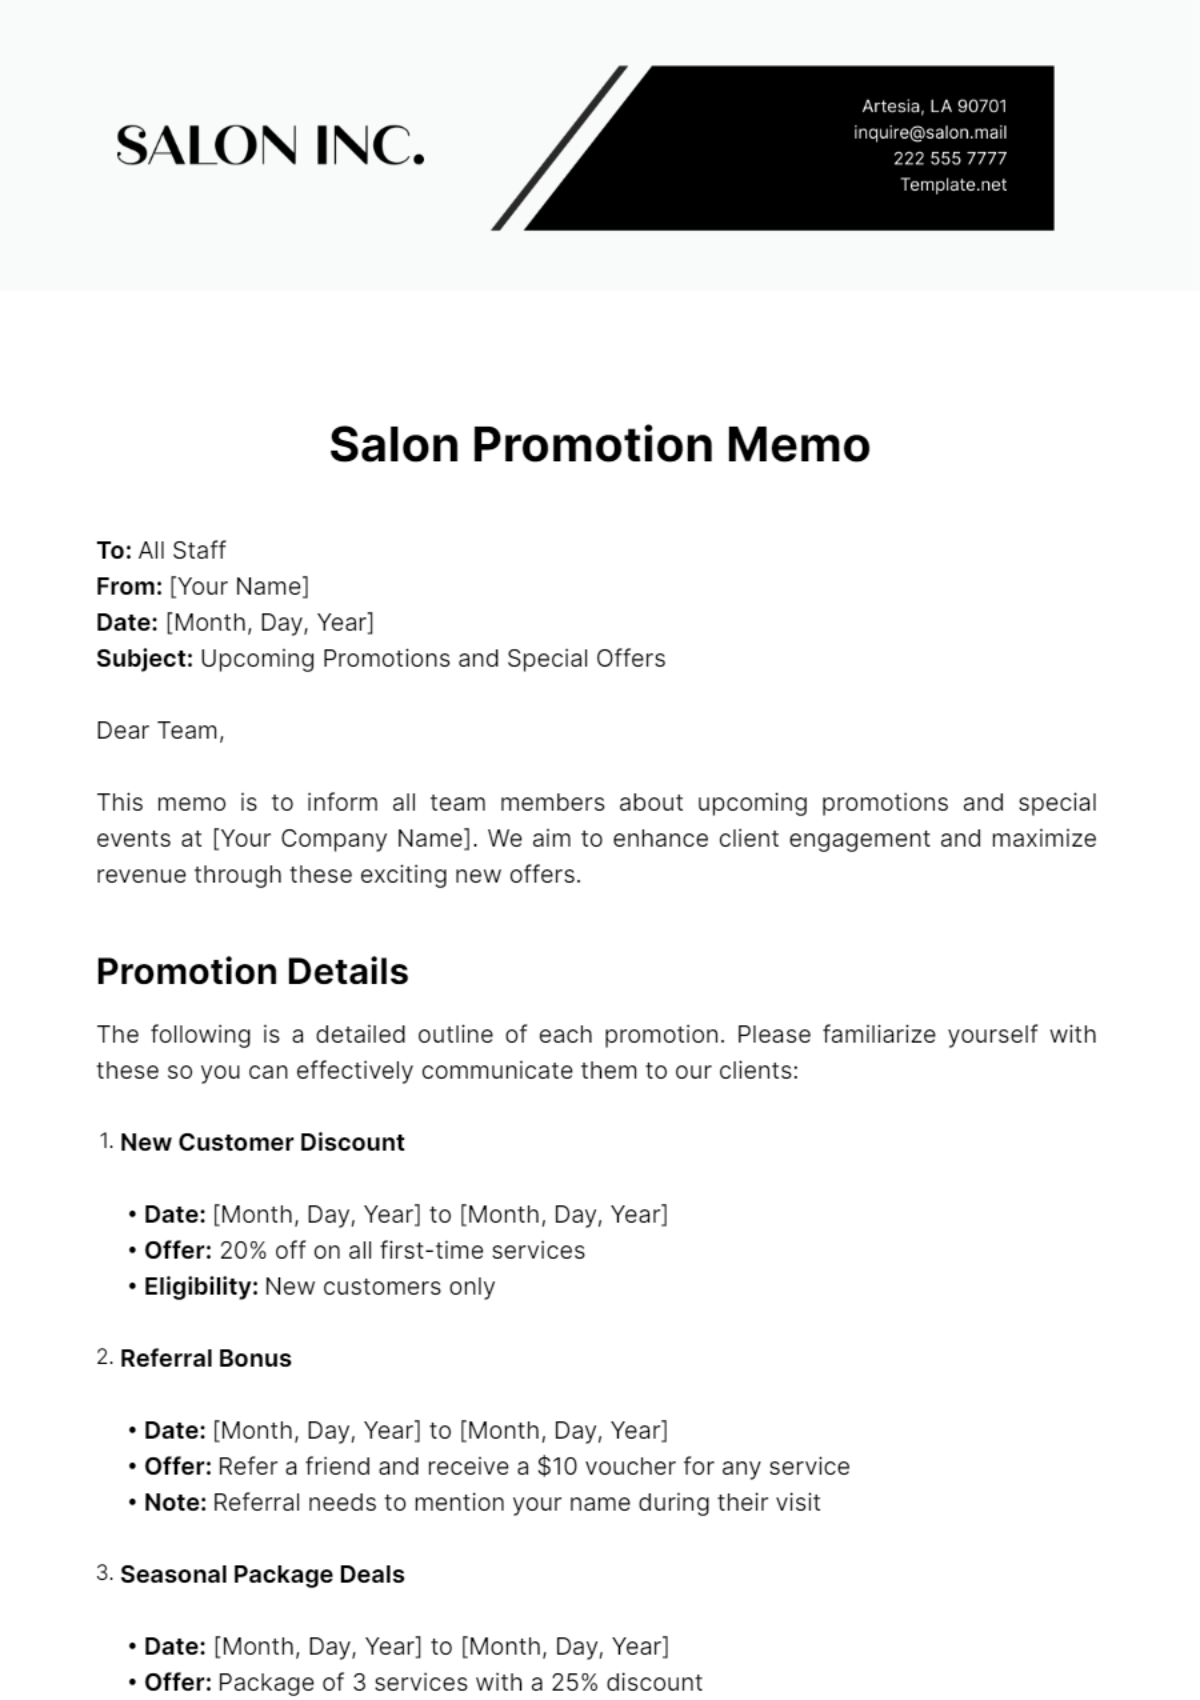 Salon Promotion Memo Template